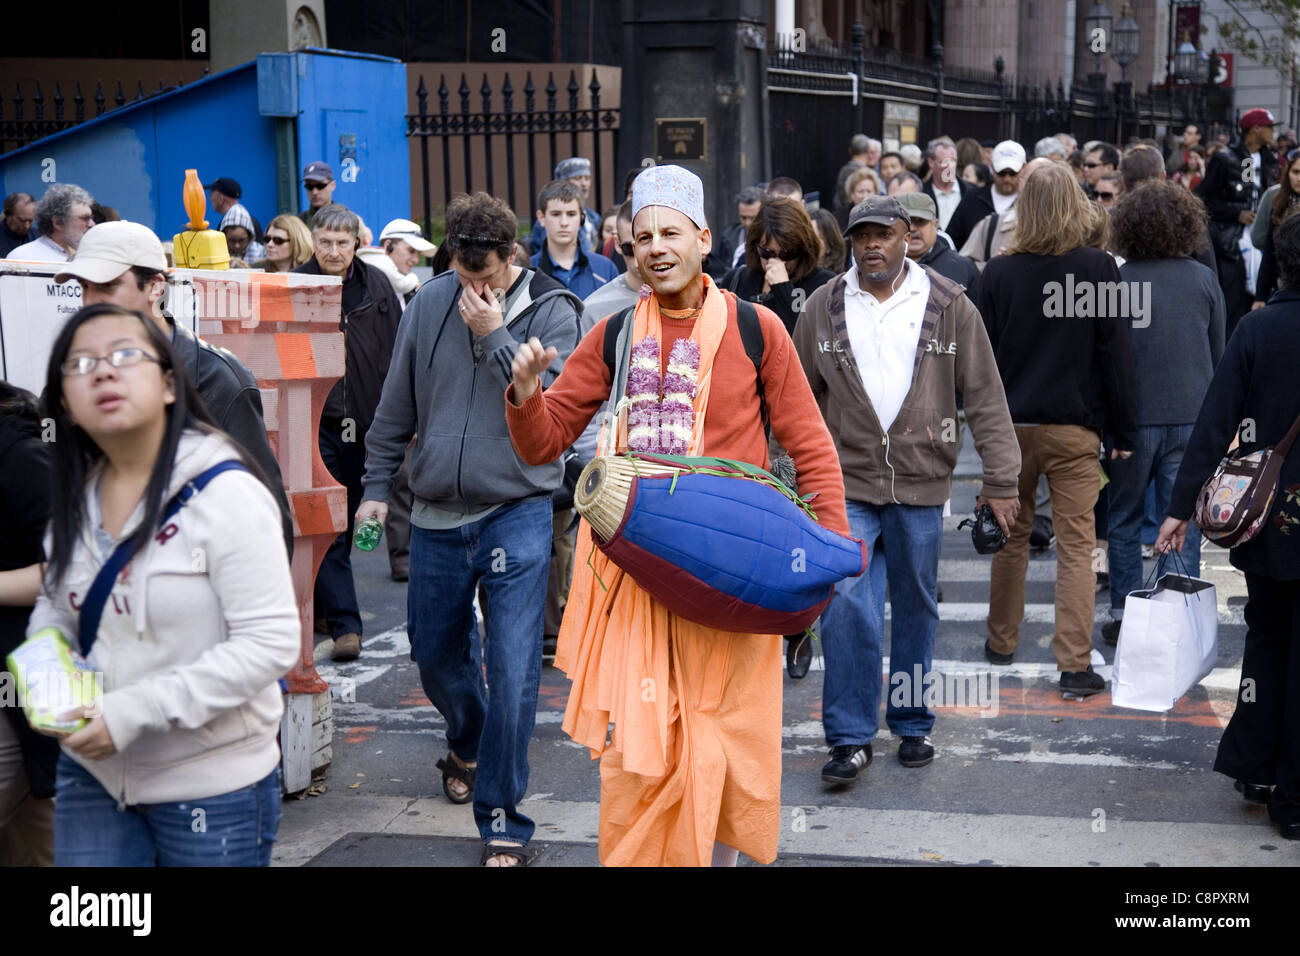 Freudige Hari Krishna-Anhänger geht und spielt seine Trommel am Broadway im Bankenviertel in New York City Stockfoto